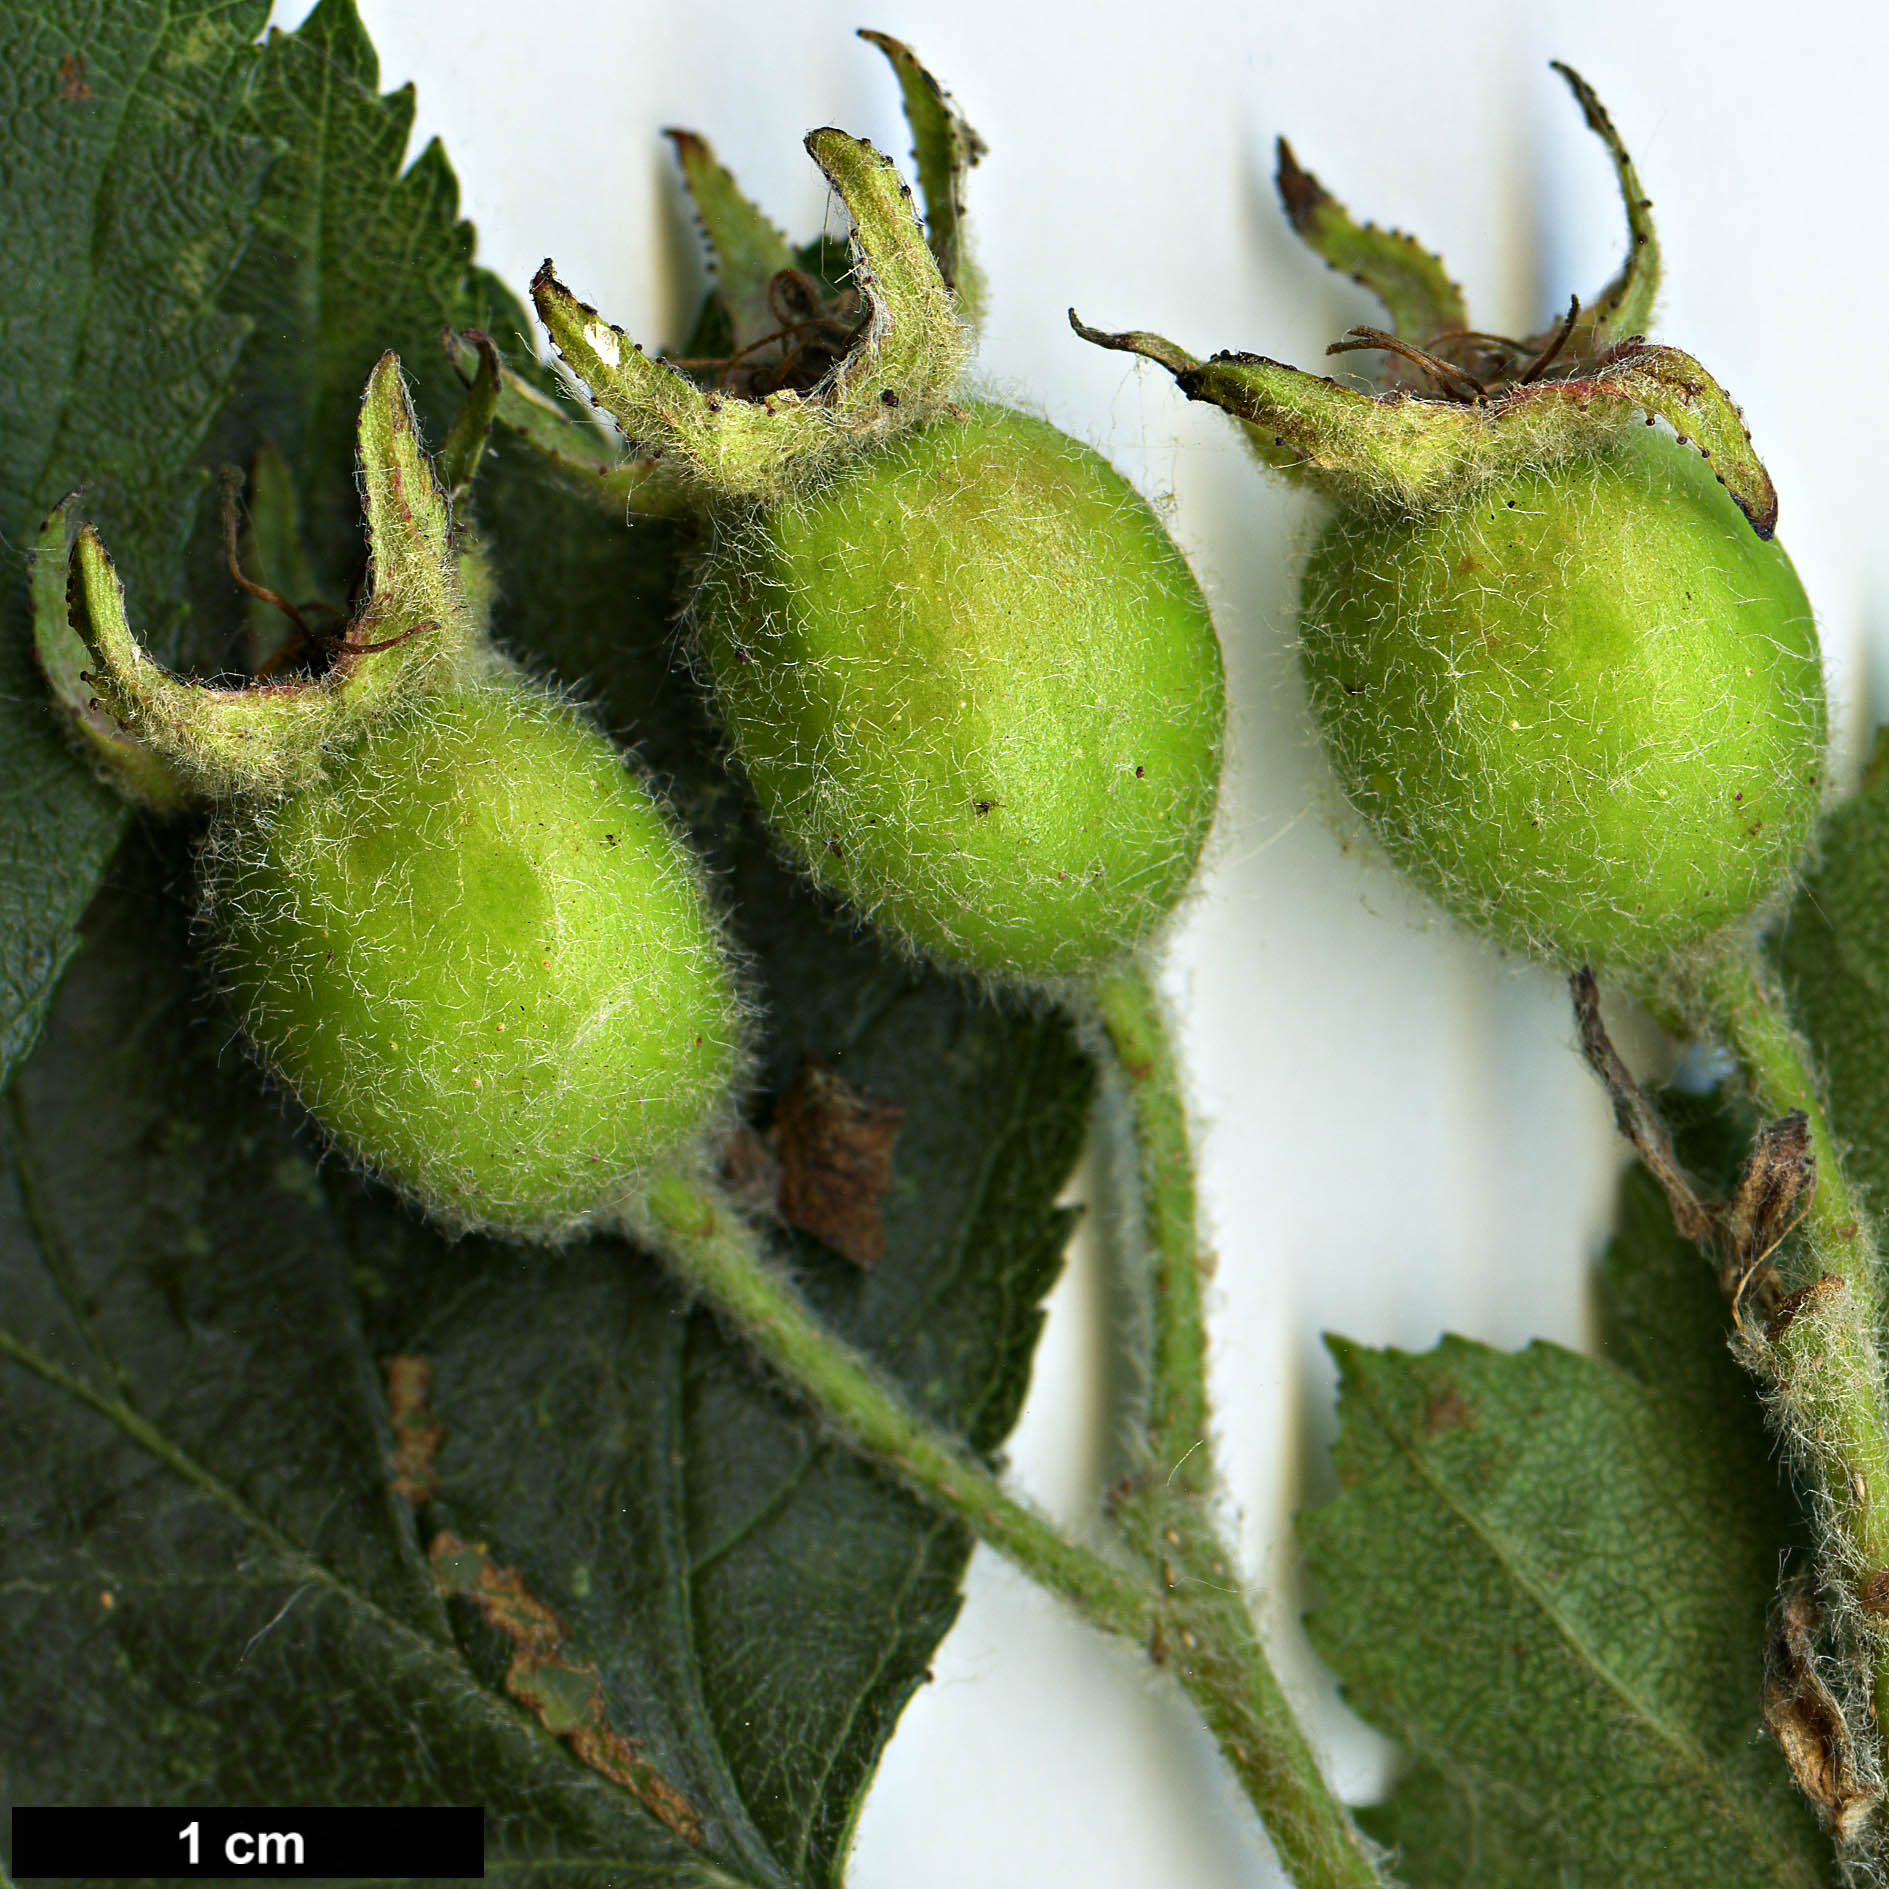 High resolution image: Family: Rosaceae - Genus: Crataegus - Taxon: jonesiae